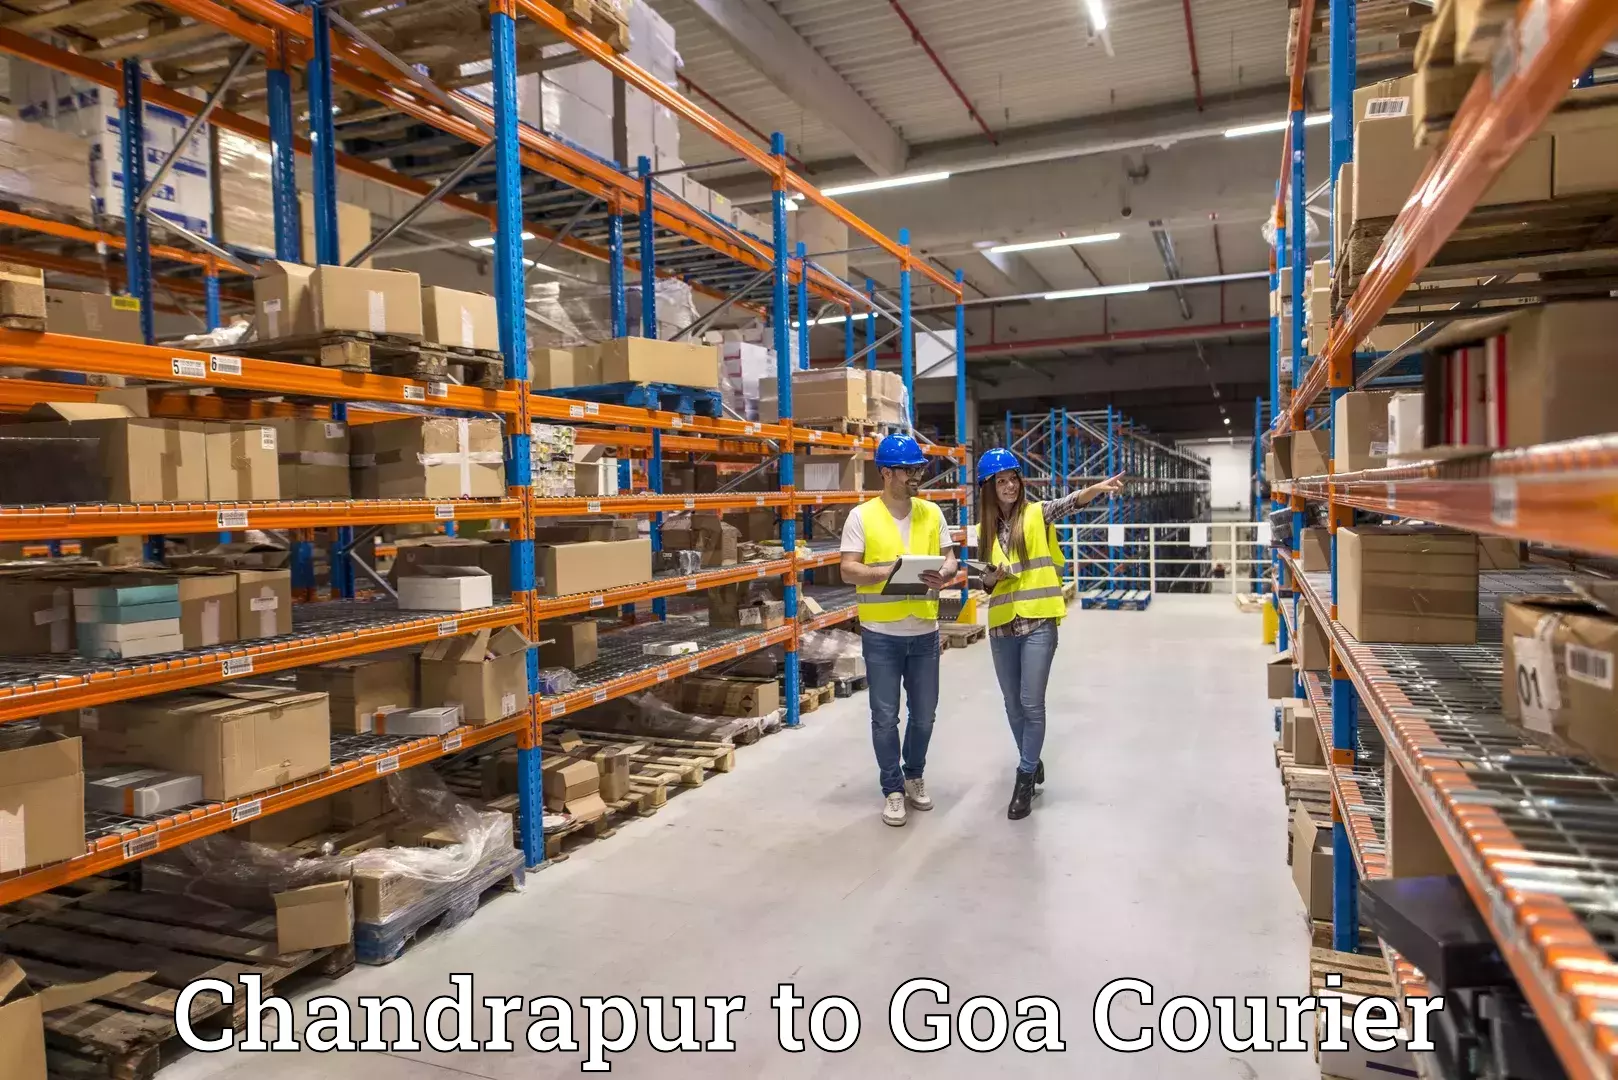 Courier insurance Chandrapur to Mormugao Port